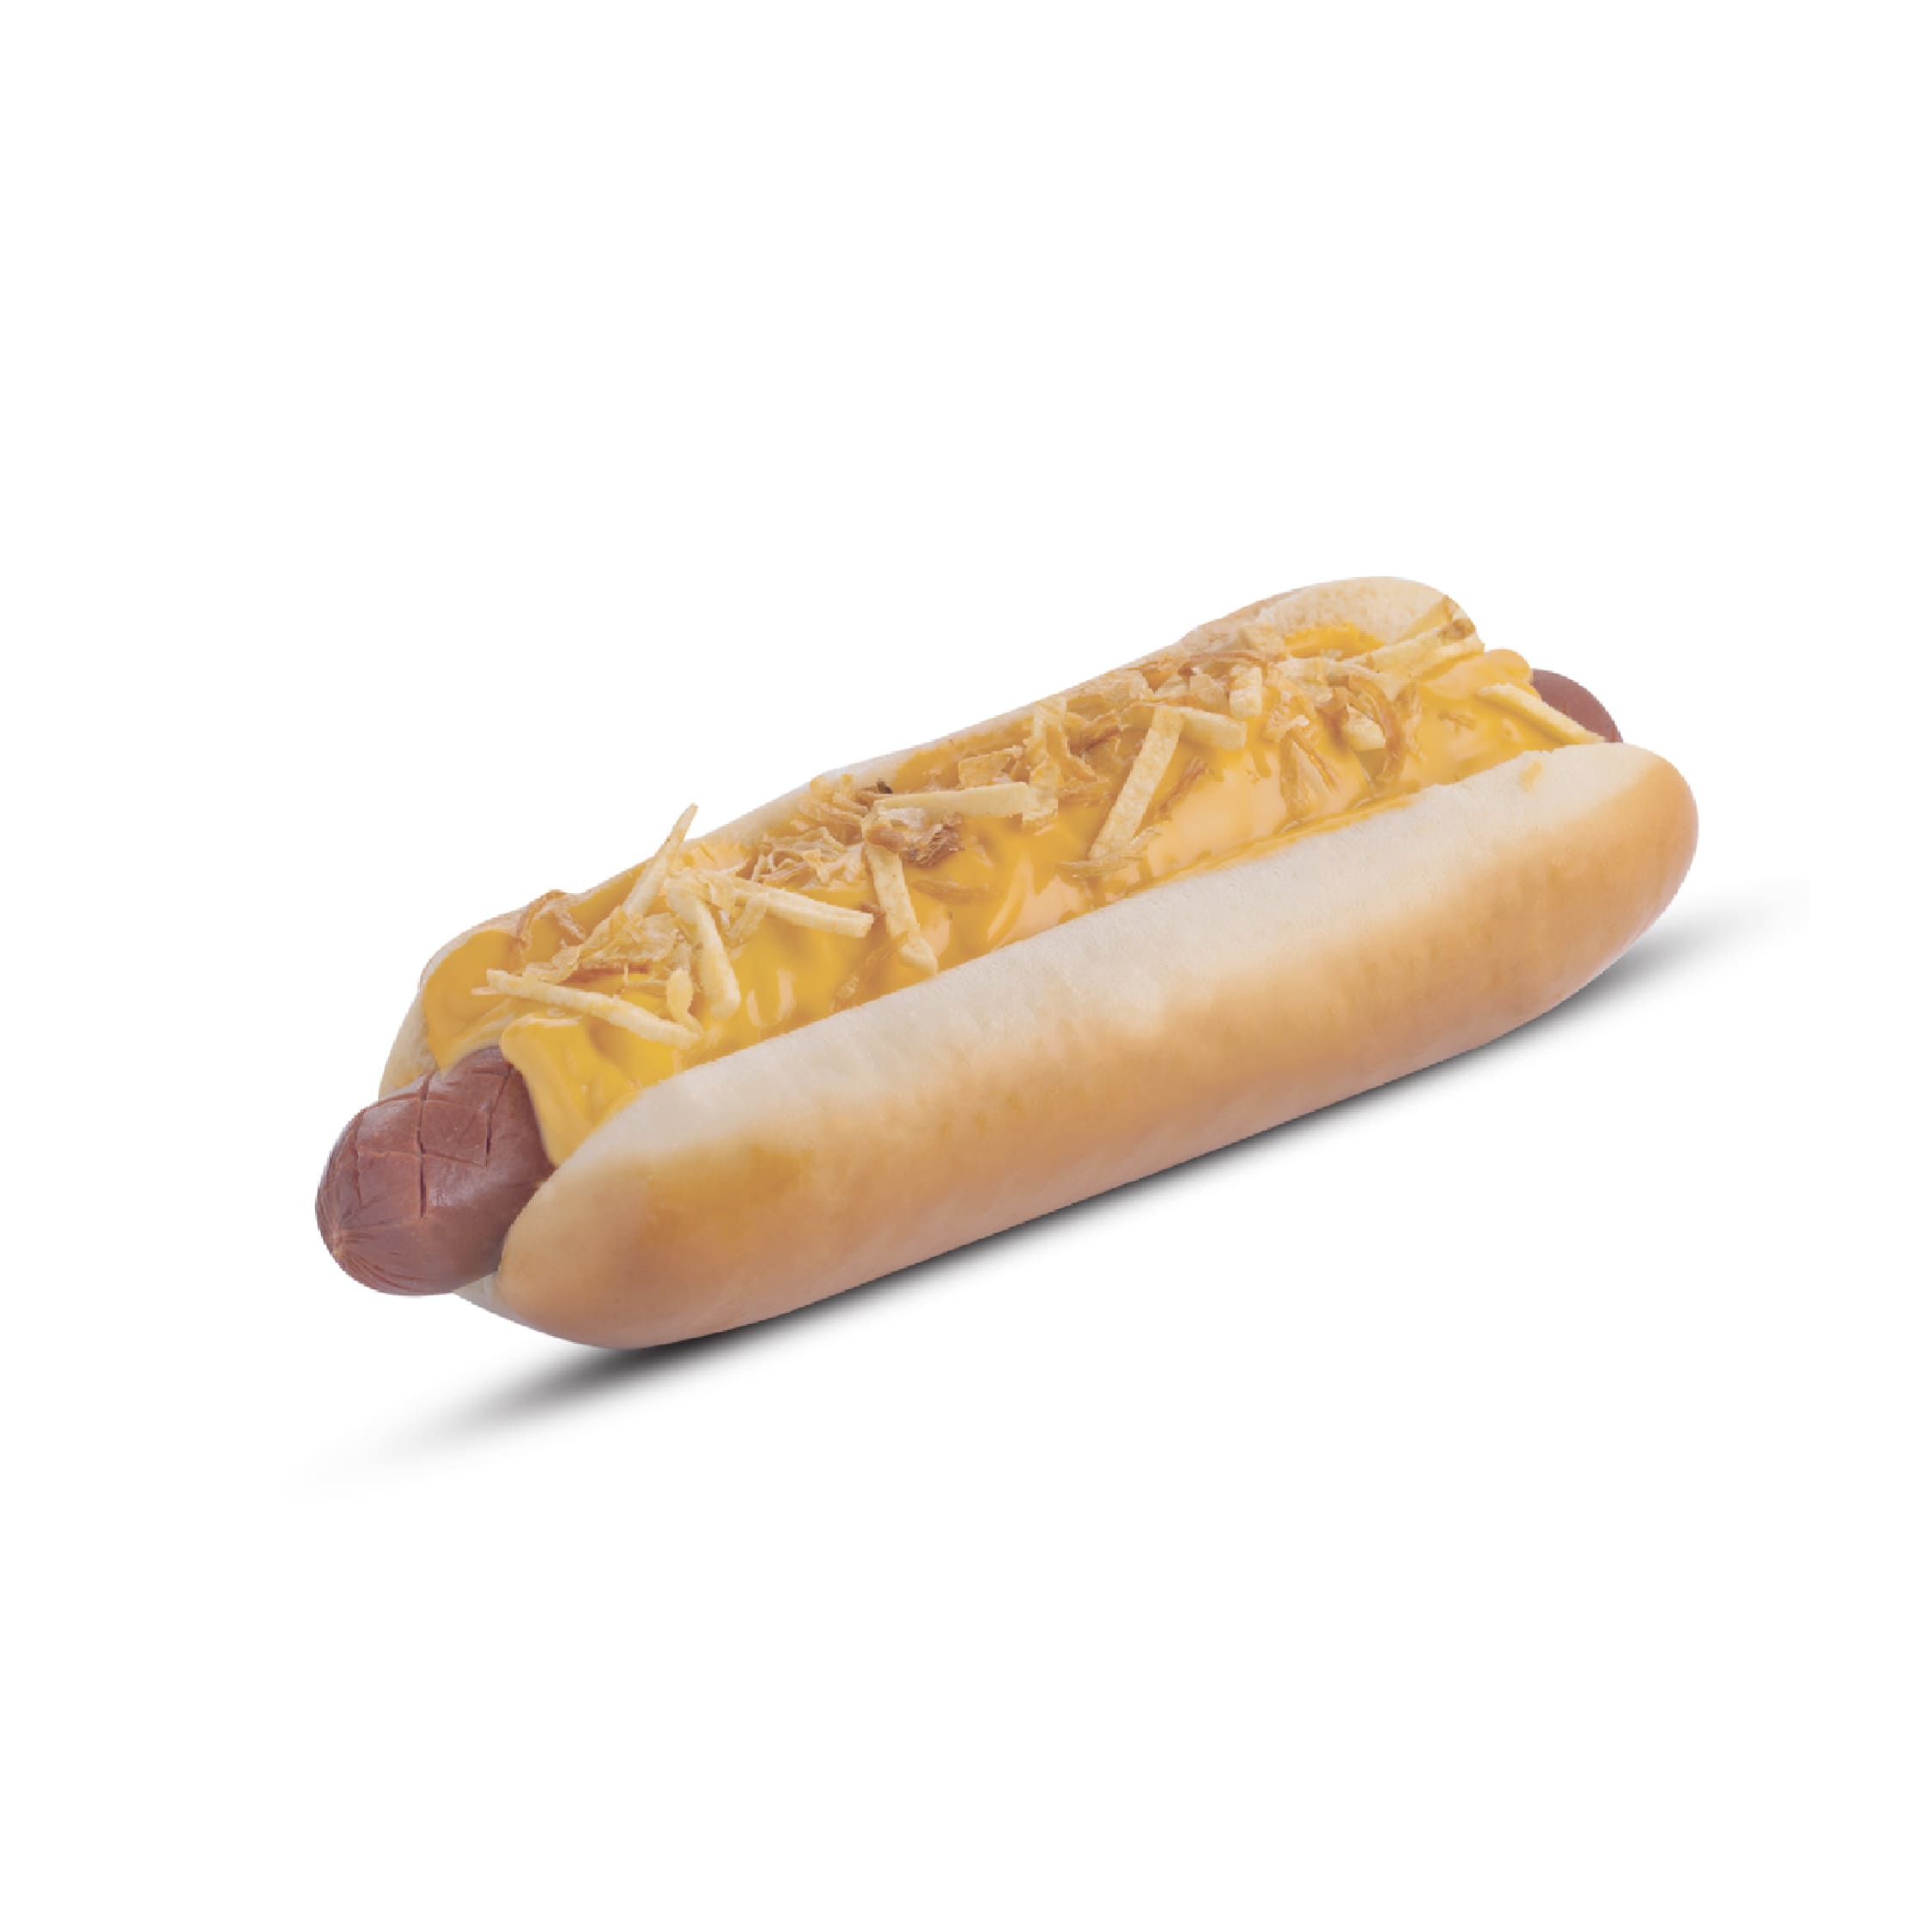 Orgada hot dog